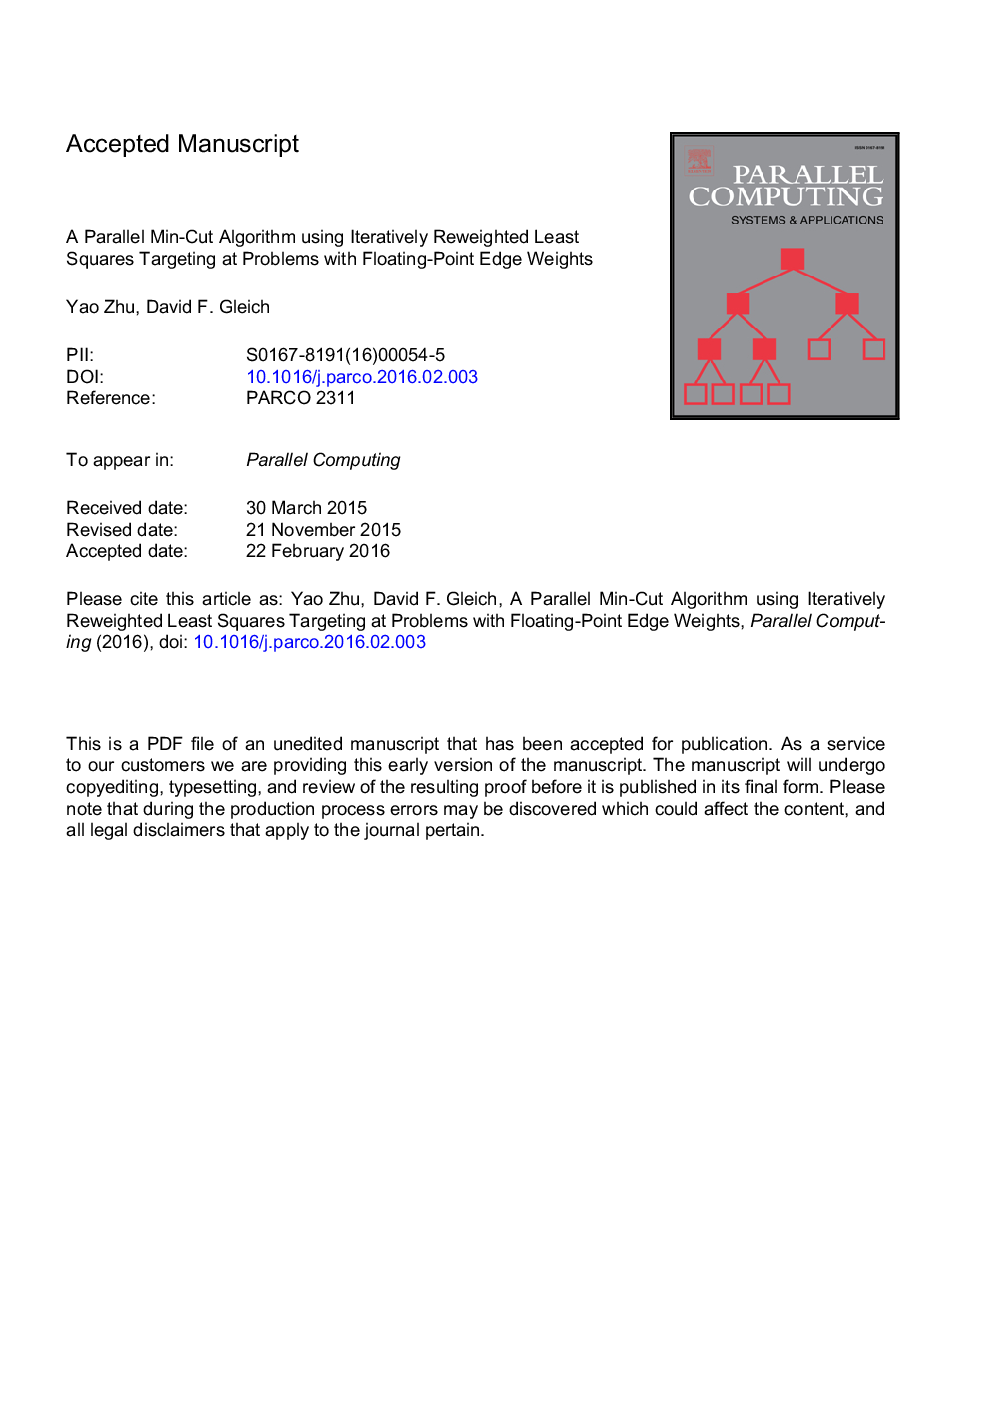 یک الگوریتم مینی برش موازی با استفاده از مقادیر کمترین مربعات تکراری که در مسائل با وزن لبه های شناور نقطه هدف قرار می گیرند 